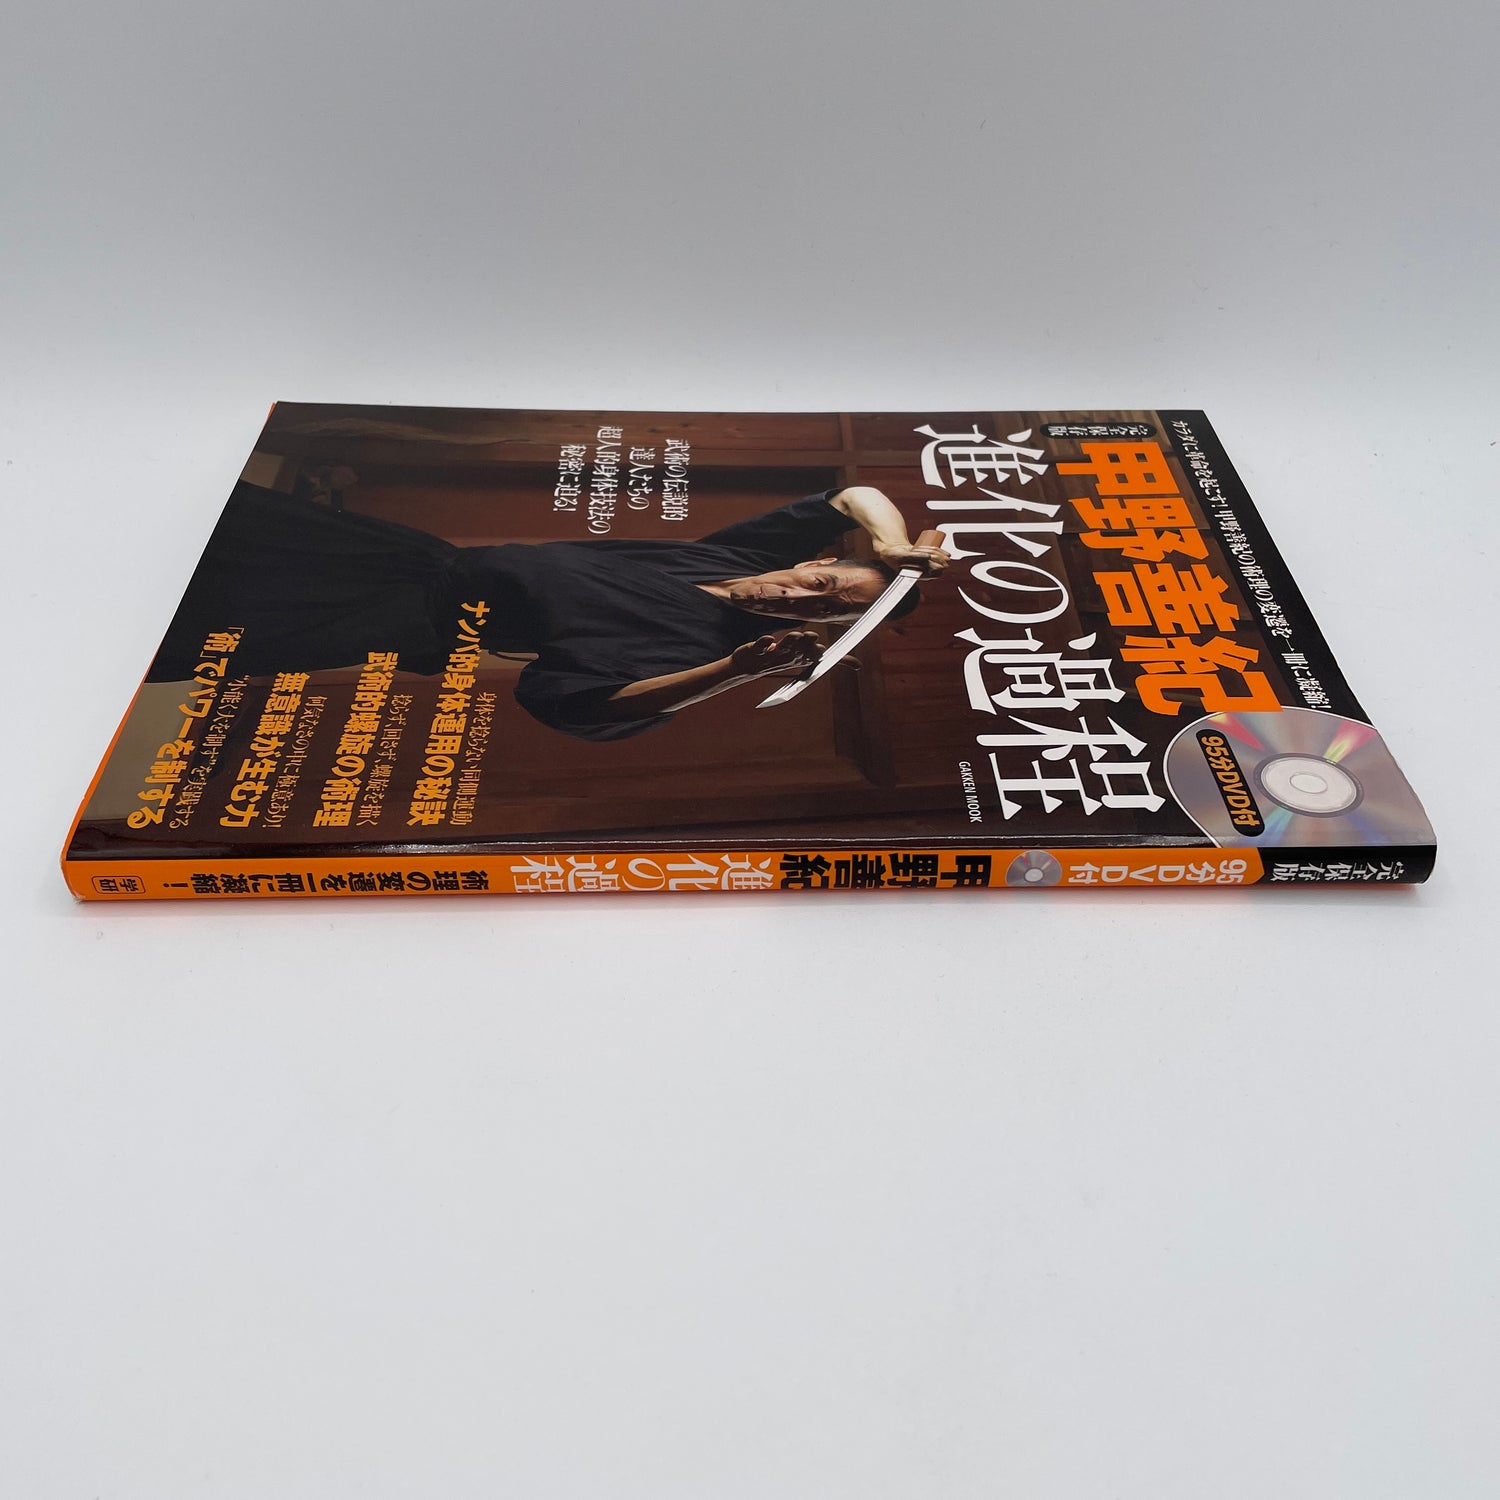 The Evolutionary Process of Yoshinori Kono Book & DVD